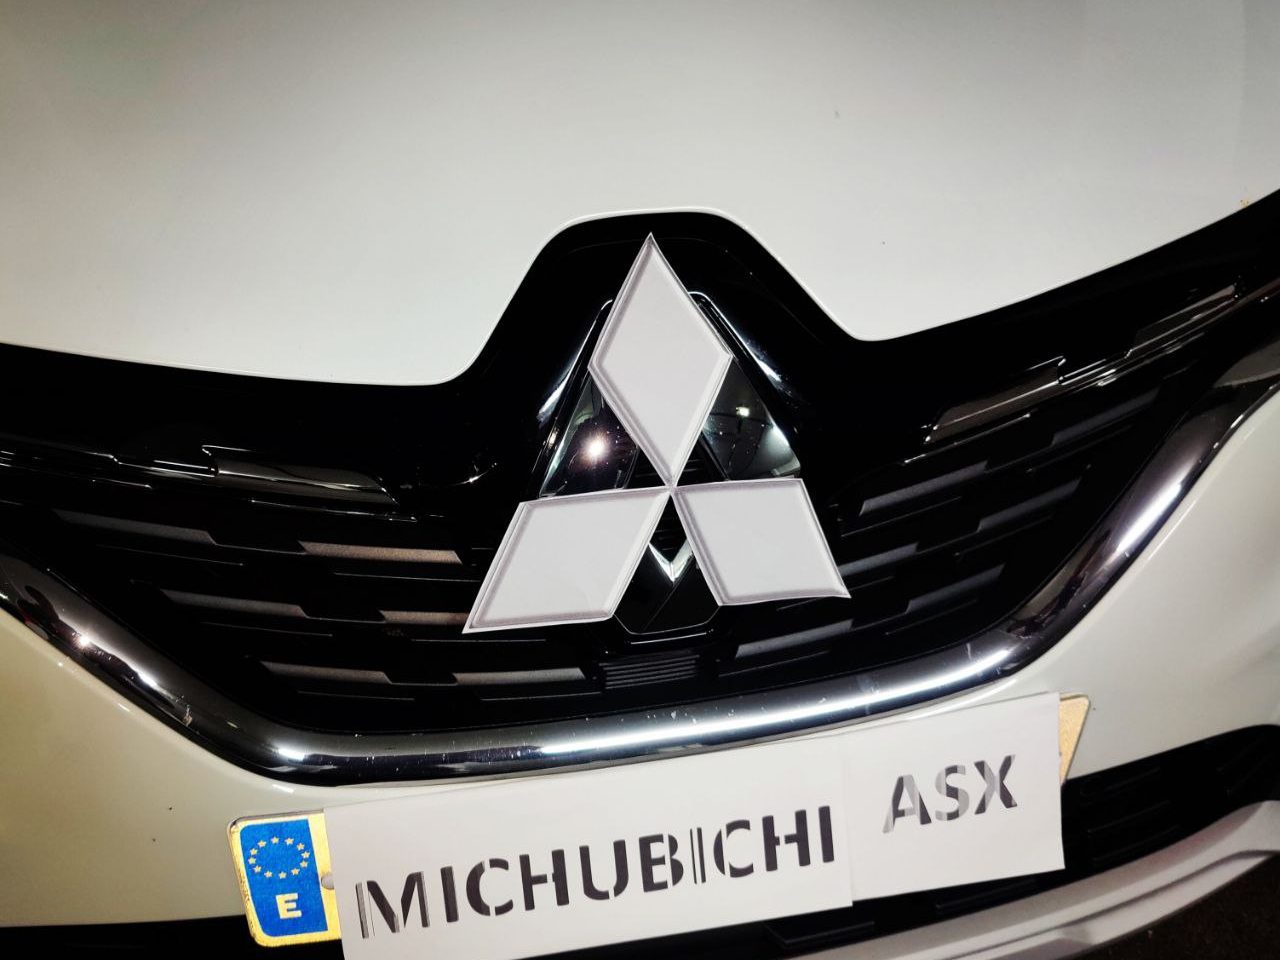 Nuevo "Renault ASX" o "Mitsubishi Captur"